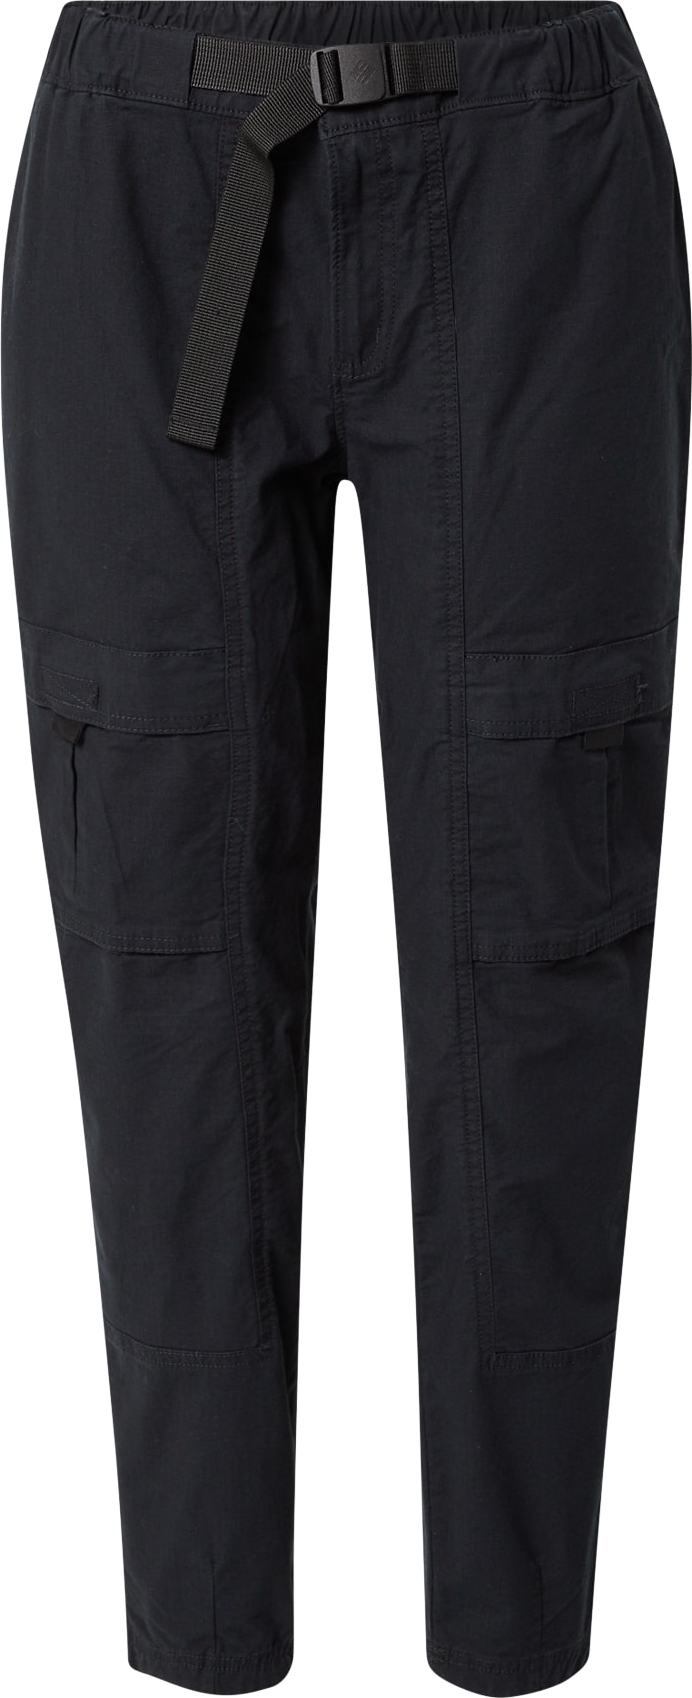 COLUMBIA Outdoorové kalhoty černá